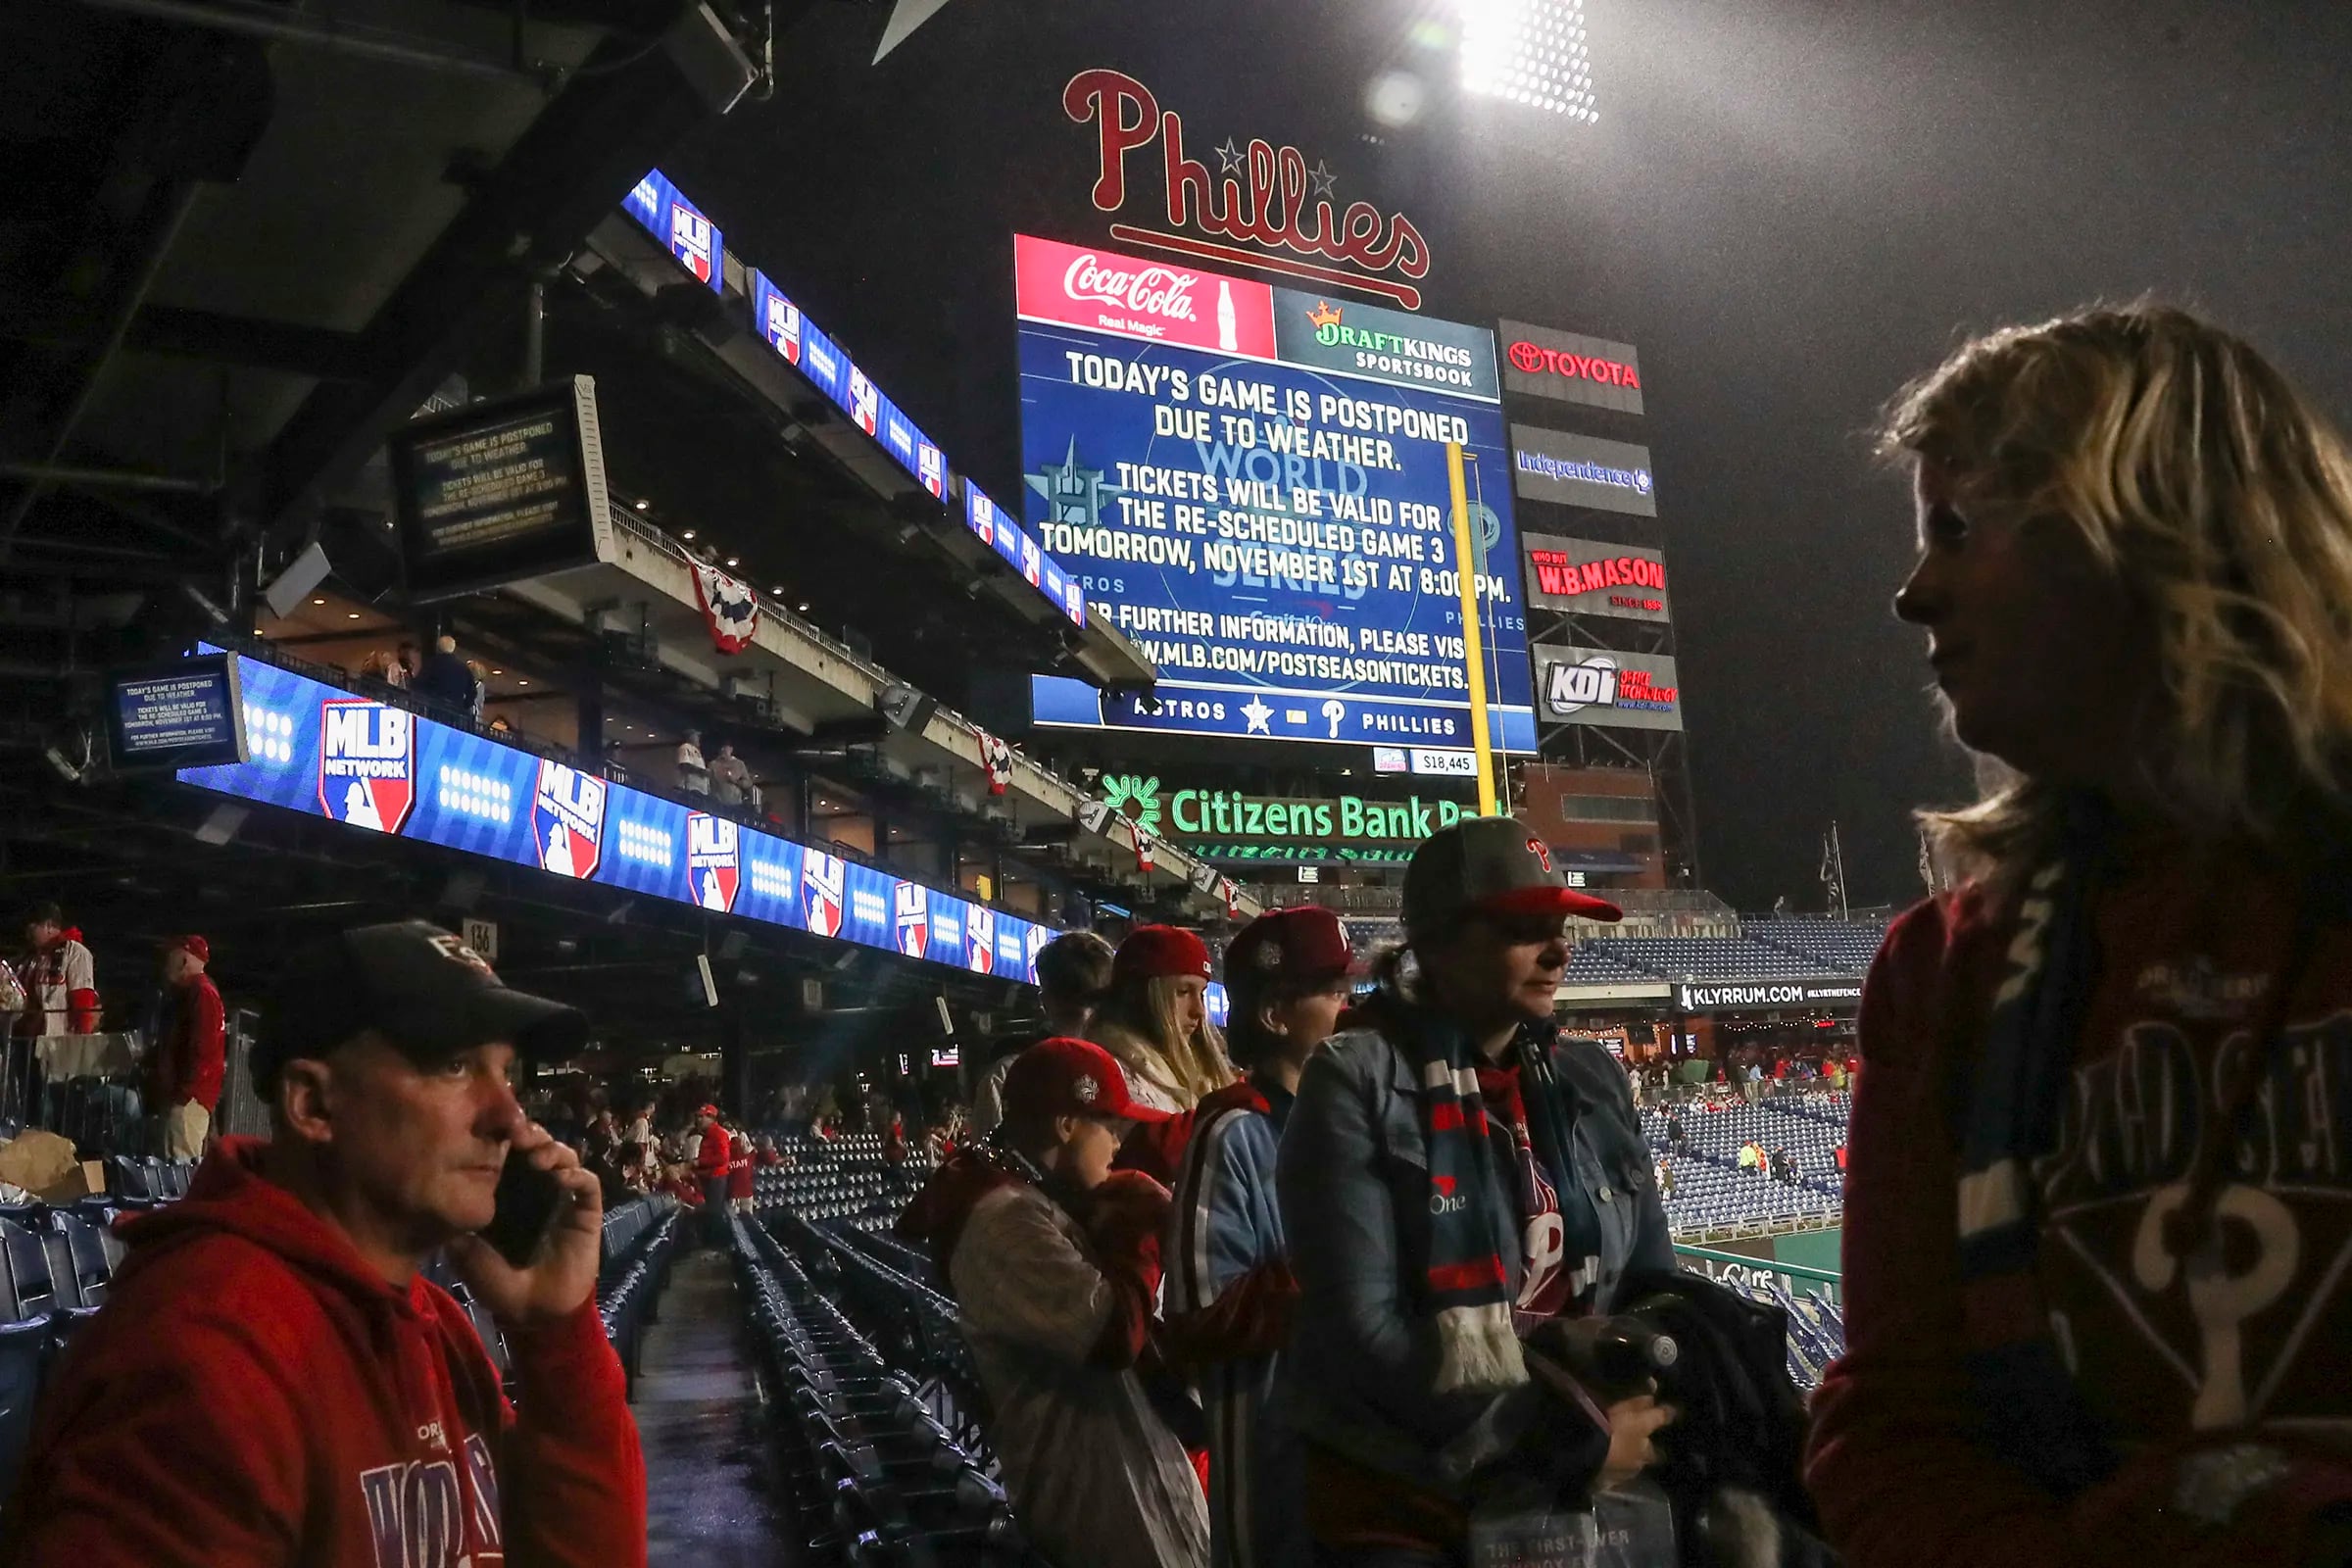 Despite rain postponement, Phillies fans celebrate World Series